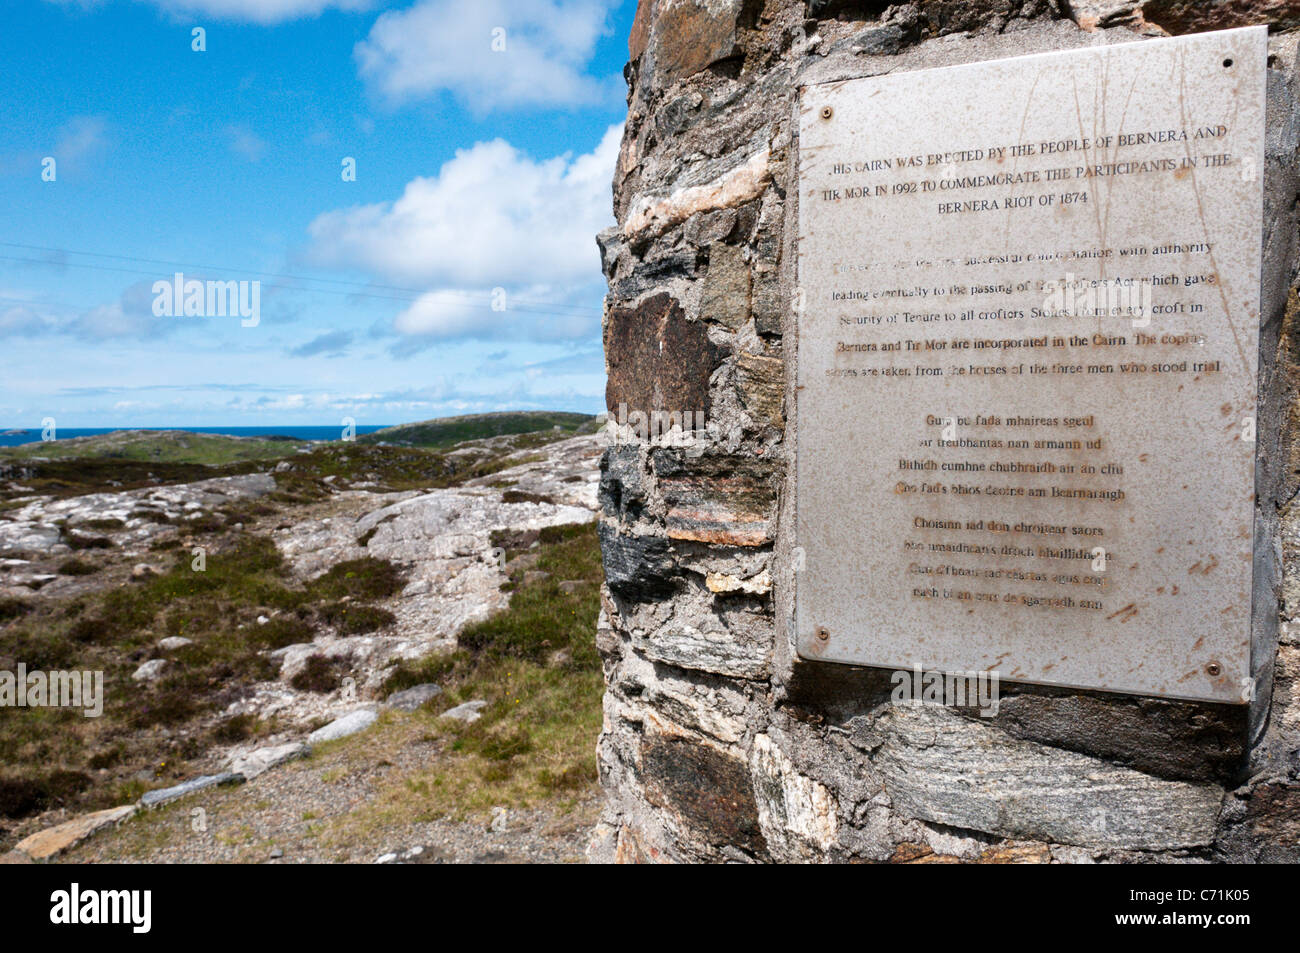 Ein Cairn auf der Insel Great Bernera in den äußeren Hebriden zum Gedenken an die Bernera Riot von 1874 die Bodenreform führen. Stockfoto